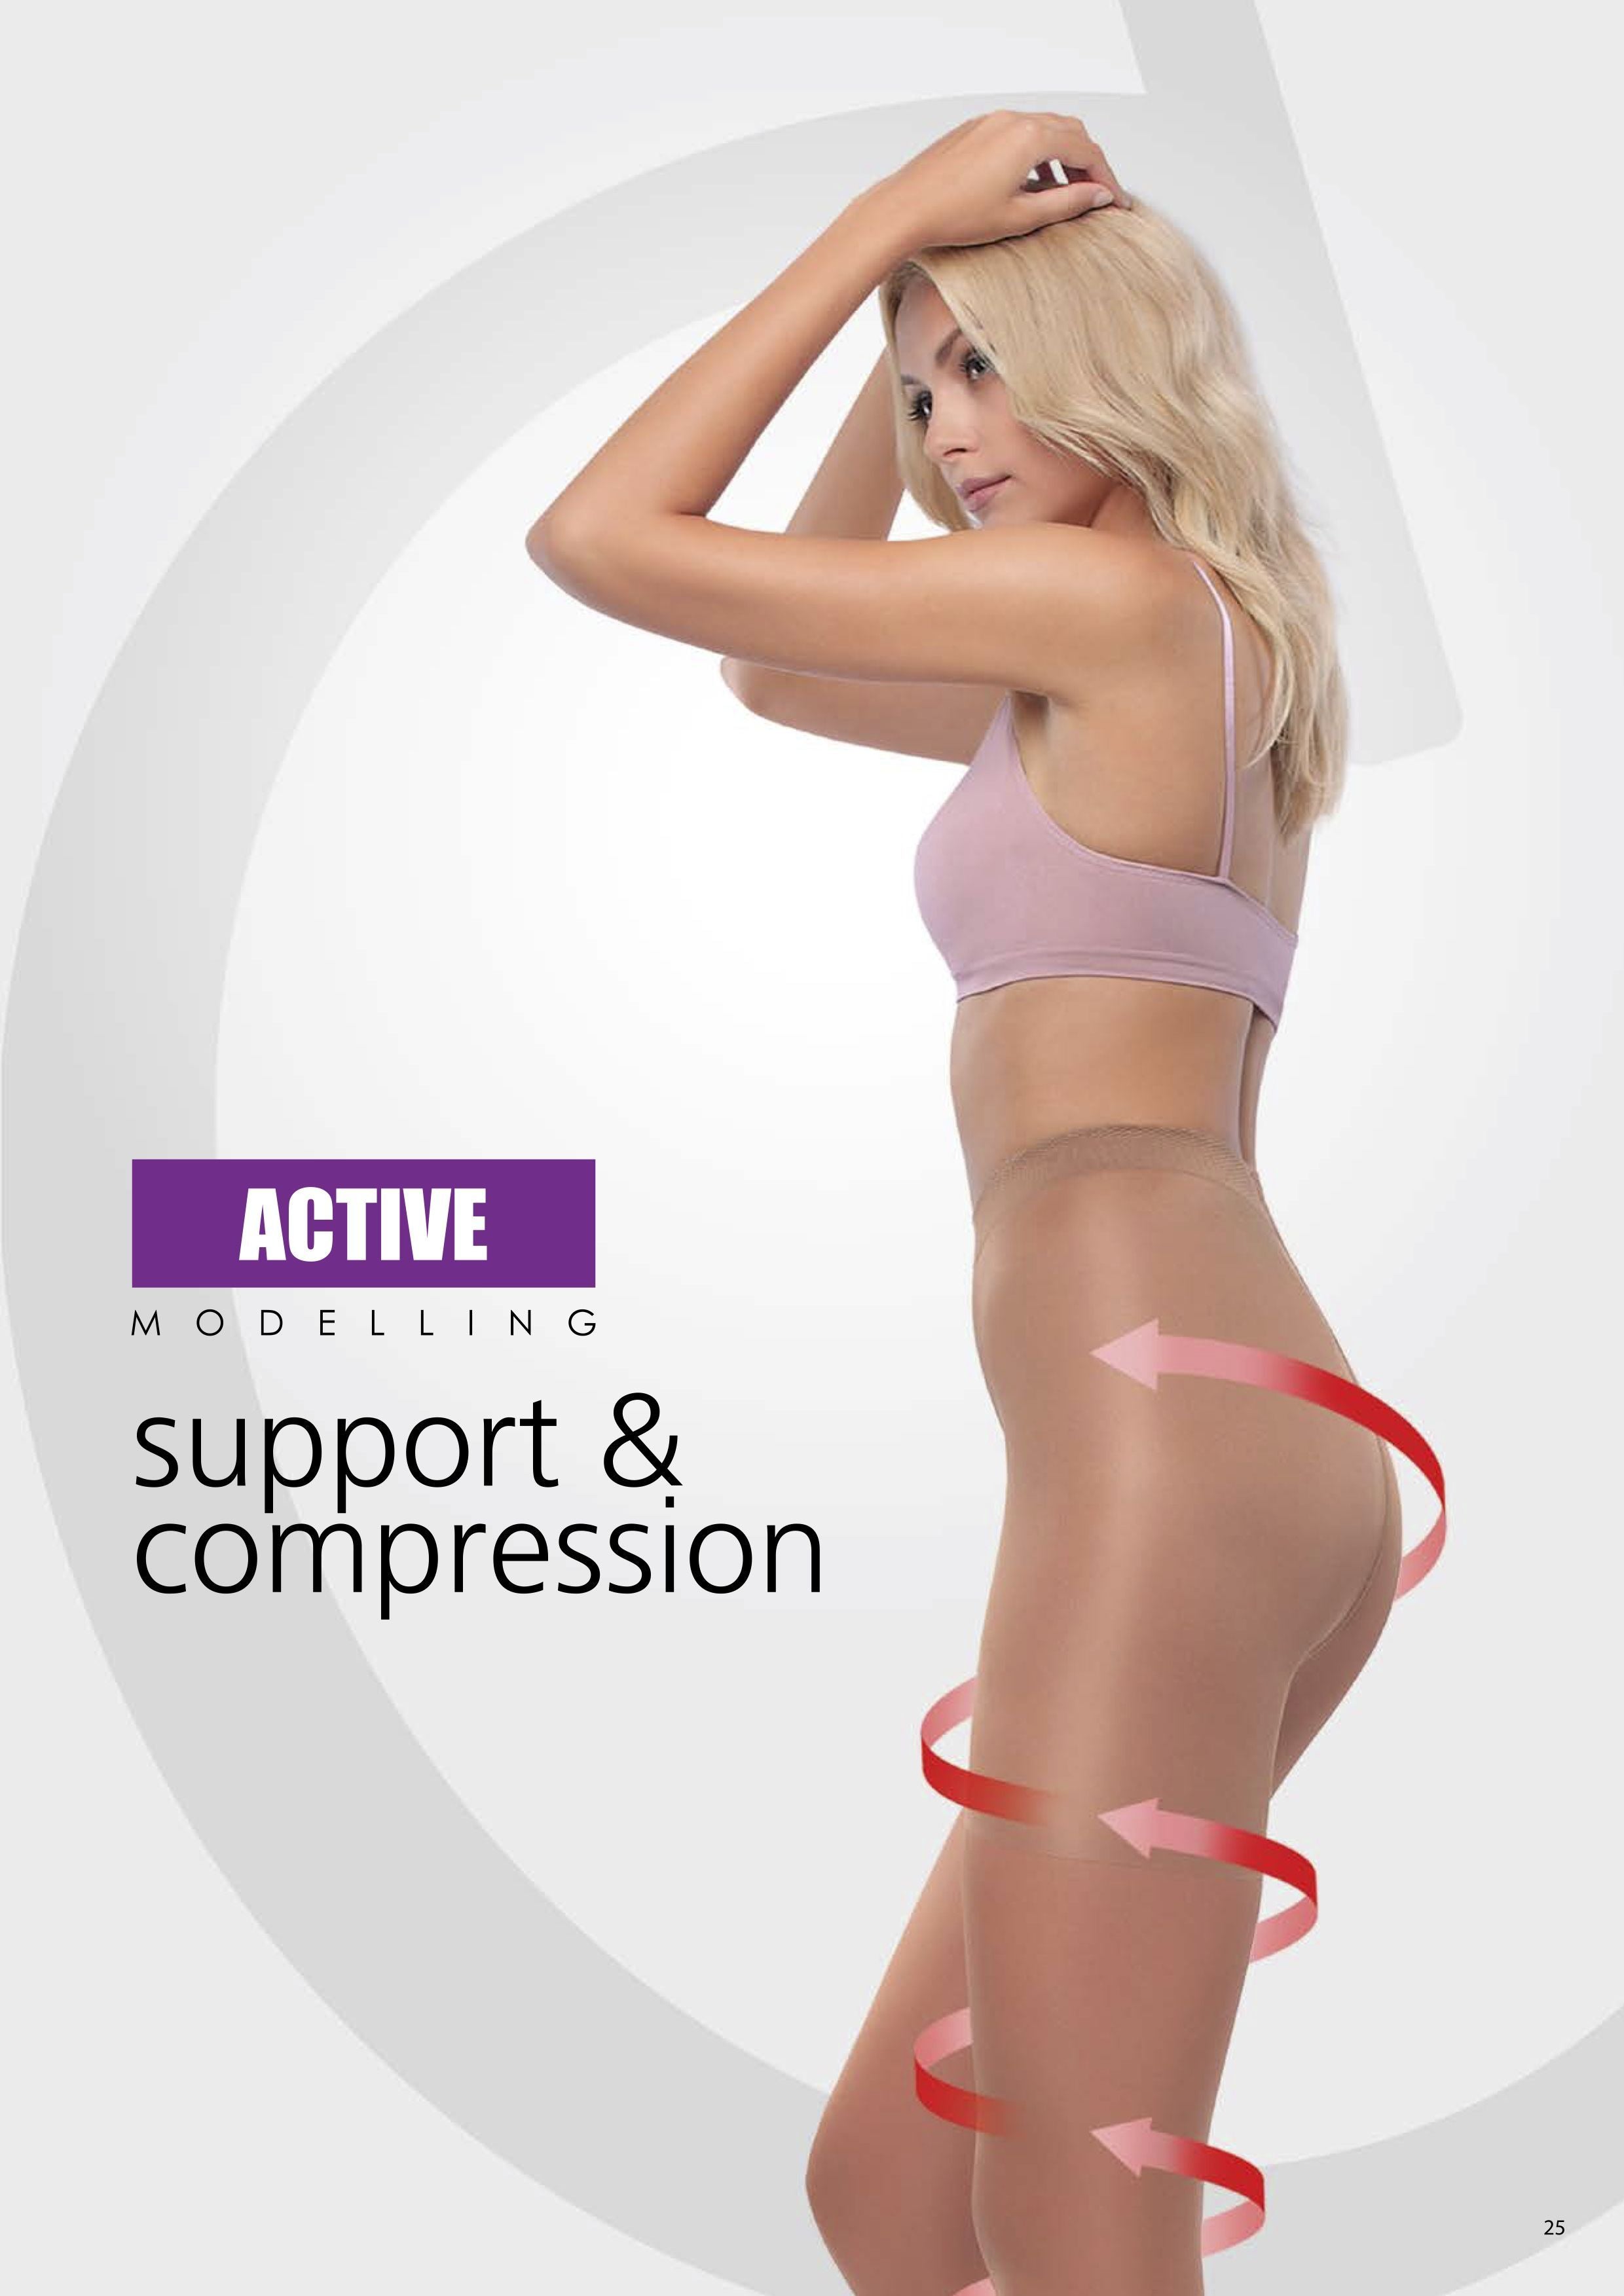 Kompresijske hlačne nogavice Conte Elegant Active s porazdeljenim pritiskom po nogi. Imajo masažni učinek, primerne za občutljivo kožo